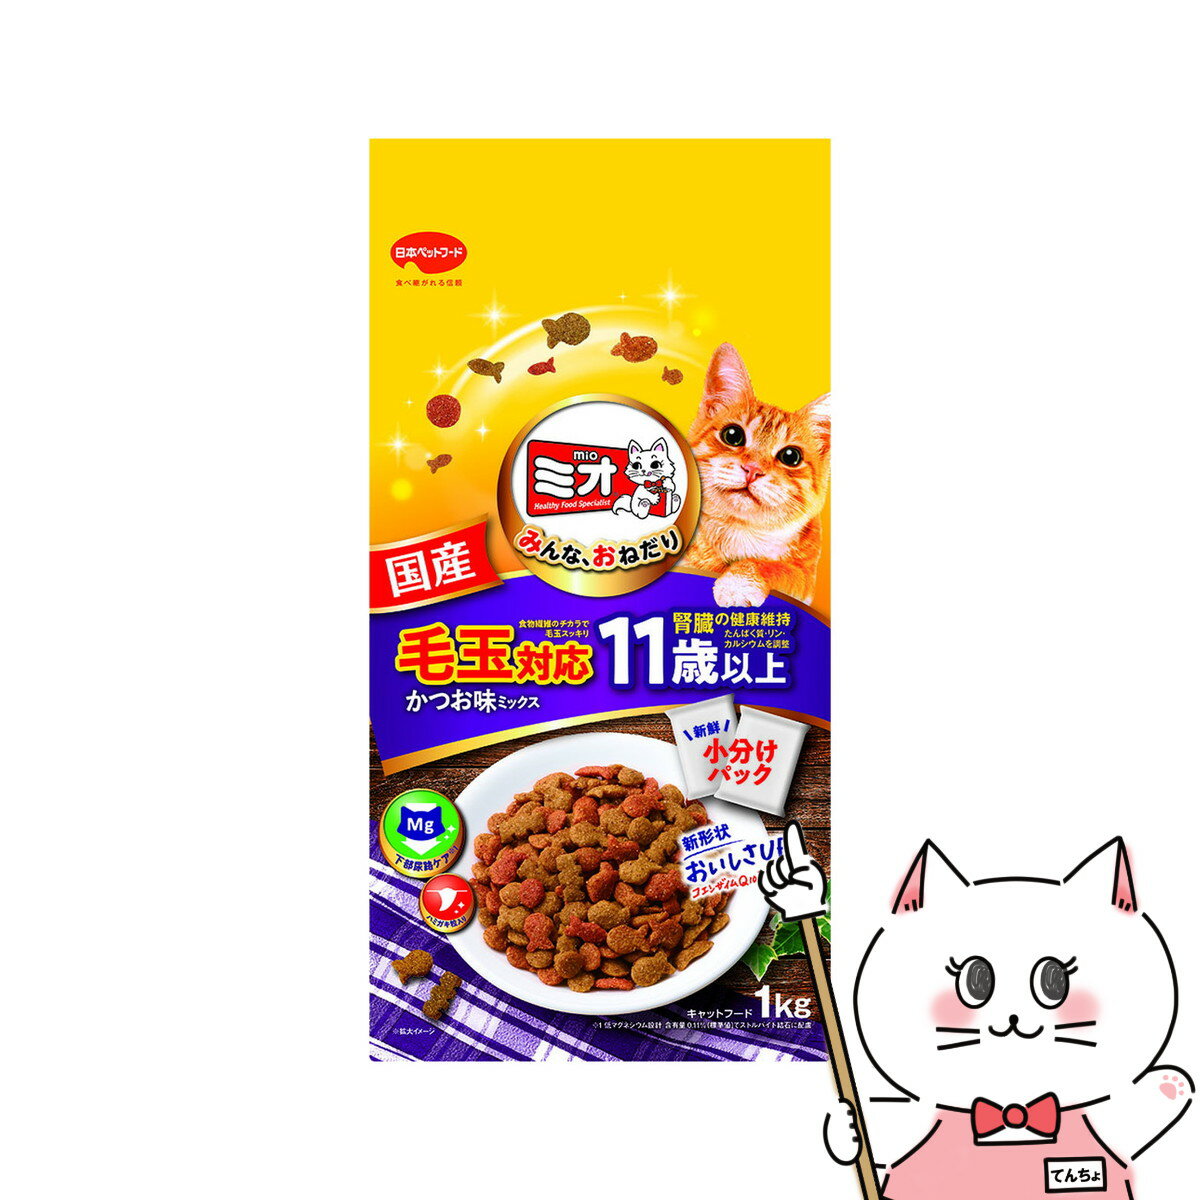 ・日本で暮らす愛猫の健康を考えた、優れた栄養バランス。・かつおとまぐろと小魚の旨みたっぷりうす型小粒をミックス。みんながおねだりしたくなる、とまらないおいしさ!・食物繊維のチカラで、毛玉すっきり。胃に溜まった毛玉の排泄を助ける毛玉対応。・11歳以上の愛猫の腎臓の健康維持を考え、たんぱく質、リン、カルシウムを調整。さらに加齢とともに減少する成分、コエンザイムQ10を配合。・カリッと歯磨き粒をプラス。噛んで歯垢を除去し、歯の健康と口臭のケア。・猫下部尿路の健康維持に配慮した、低マグネシウム設計。(マグネシウム含有量0.11％：標準値)・新鮮小分けパック。・総合栄養食。メーカー/ブランド日本ペットフード 株式会社商品名ミオドライミックス 毛玉対応 11歳以上 かつお味 1kg原材料穀類(トウモロコシ、コーングルテンミール、小麦粉、パン粉)、肉類(チキンミール、牛肉粉、豚肉粉)、動物性油脂、魚介類(フィッシュパウダー、カツオ粉末、マグロ節粉、小魚粉末)、脱脂大豆、コエンザイムQ10、オリゴ糖、野菜類(トマト、ニンジン、ホウレンソウ)、クランベリーパウダー、セルロース(食物繊維)、ミネラル類(カルシウム、リン、カリウム、ナトリウム、クロライド、鉄、銅、マンガン、亜鉛、ヨウ素、コバルト)、アミノ酸類(タウリン、メチオニン、リジン)、ビタミン類(A、B1、B2、B6、B12、D、E、K、ニコチン酸、パントテン酸、ビオチン、葉酸、コリン、アスコルビン酸カルシウム)、着色料(食用赤色102号、食用赤色106号、食用黄色4号、食用黄色5号)、酸化防止剤(ミックストコフェロール、ローズマリー抽出物、ハーブ抽出物)、グルコサミン、コンドロイチン保証成分たんぱく質24.0％以上、脂質8.5％以上、粗繊維4.5％以下、灰分9.0％以下、水分10.0％以下、カルシウム0.6％以上、リン0.5％以上、リノール酸0.9％、マグネシウム標準値0.11％エネルギー350kcal/100g賞味期限18ヶ月区分日本製/ペット用品広告文責ピュアクリエイト株式会社TEL:048-529-7355